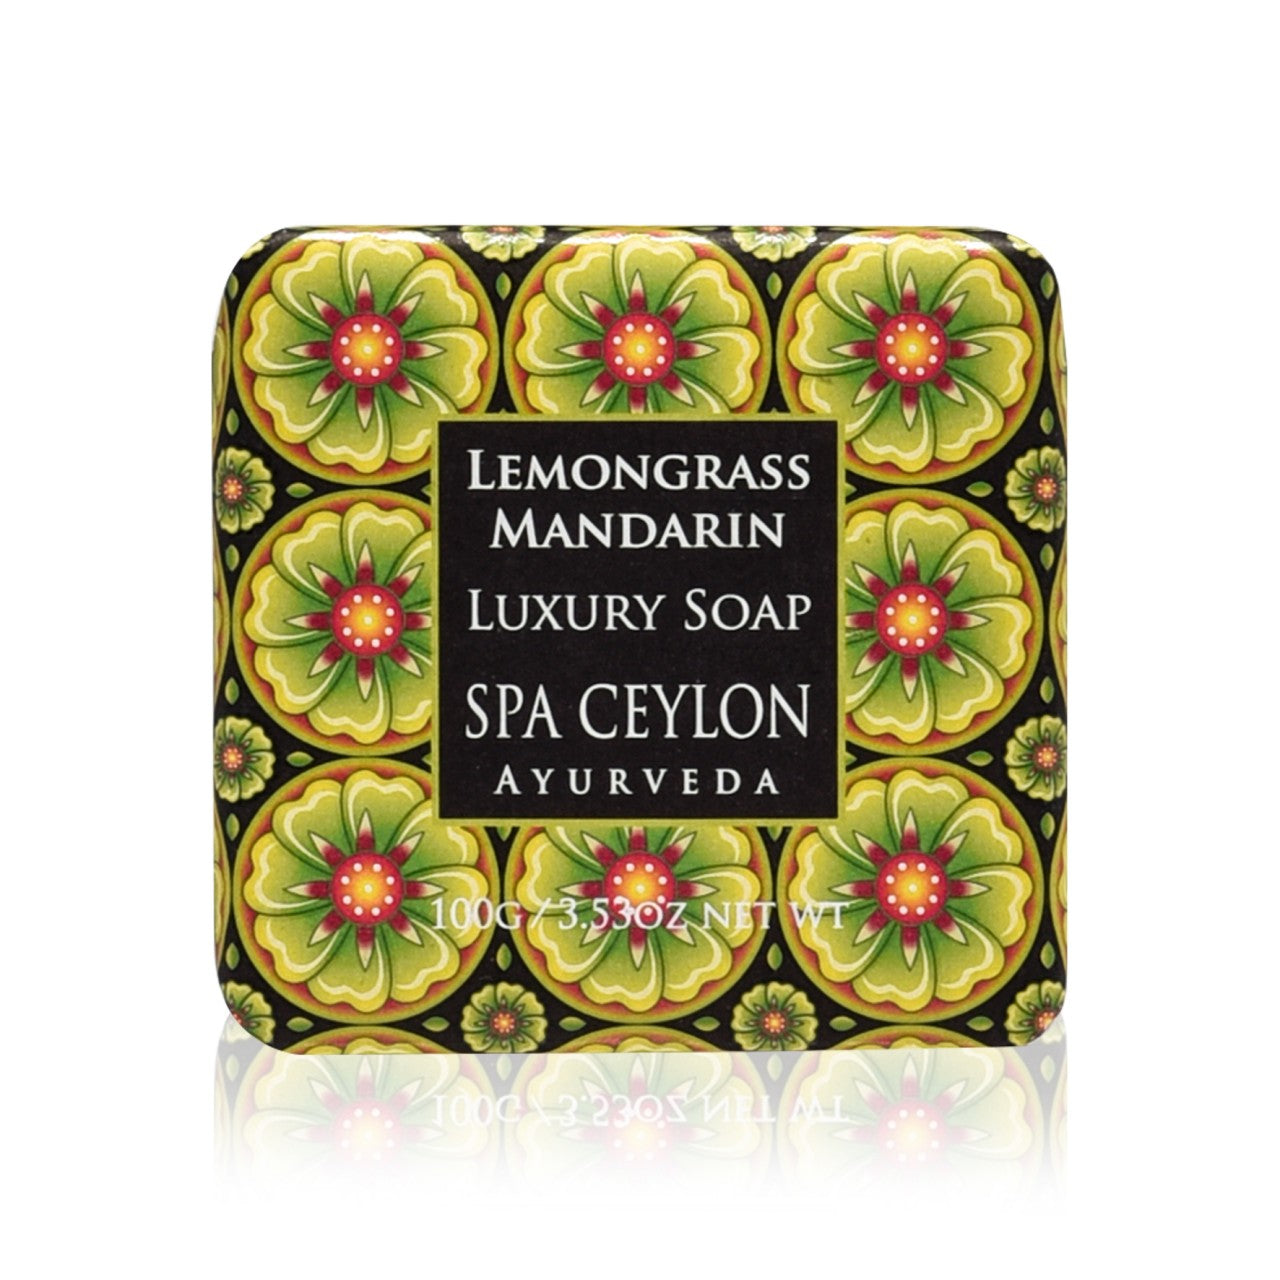 Lemongrass Mandarin Luxury Soap